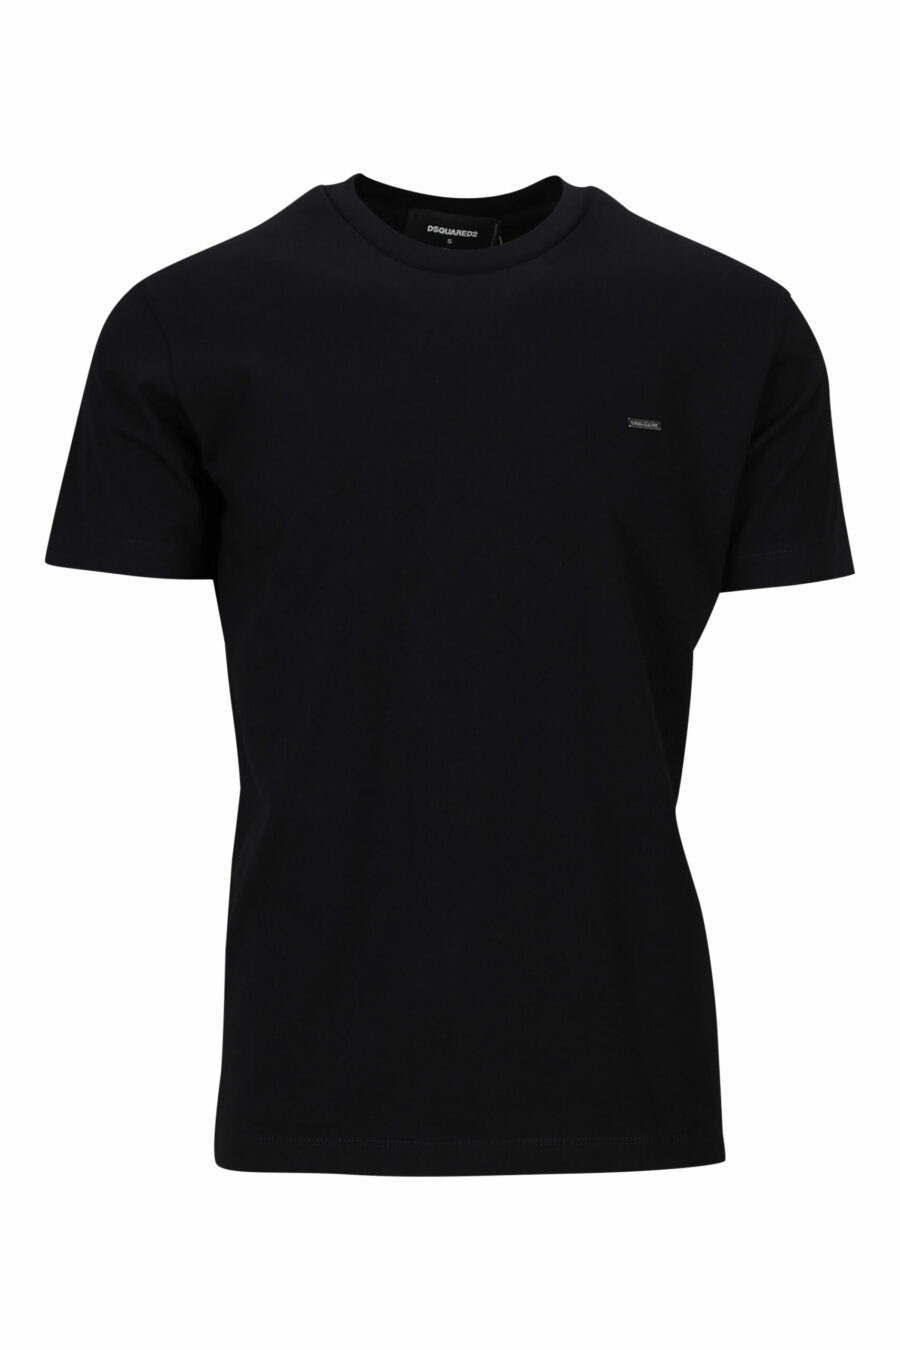 T-shirt preta com logótipo em placa pequena - 8054148370800 1 scale